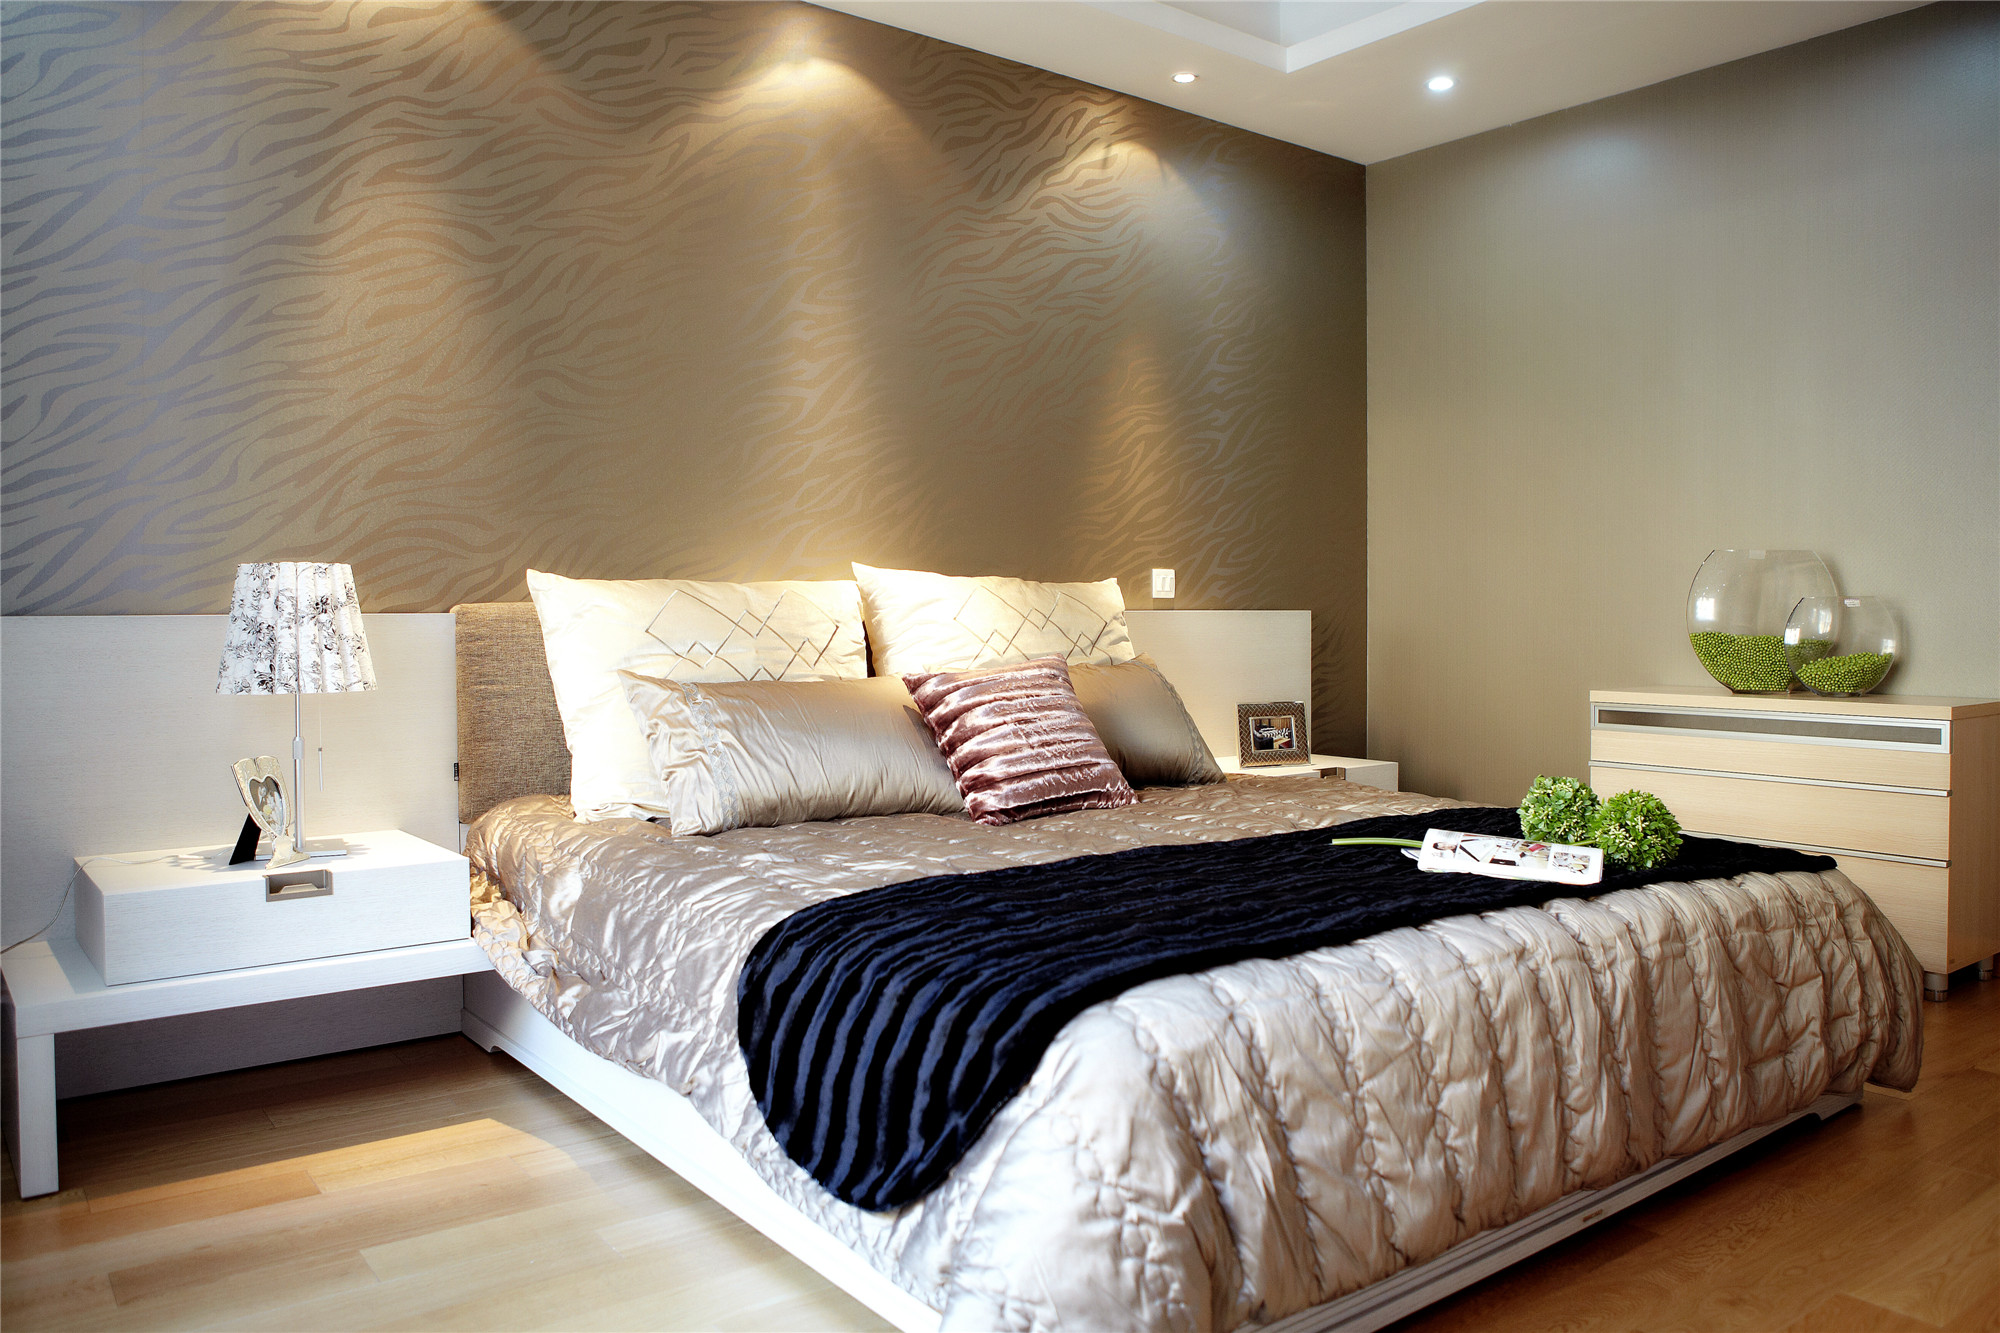 三居 现代 简约 简单 卧室图片来自成都生活家装饰徐洋在中德英伦联邦149.00㎡现代简约的分享